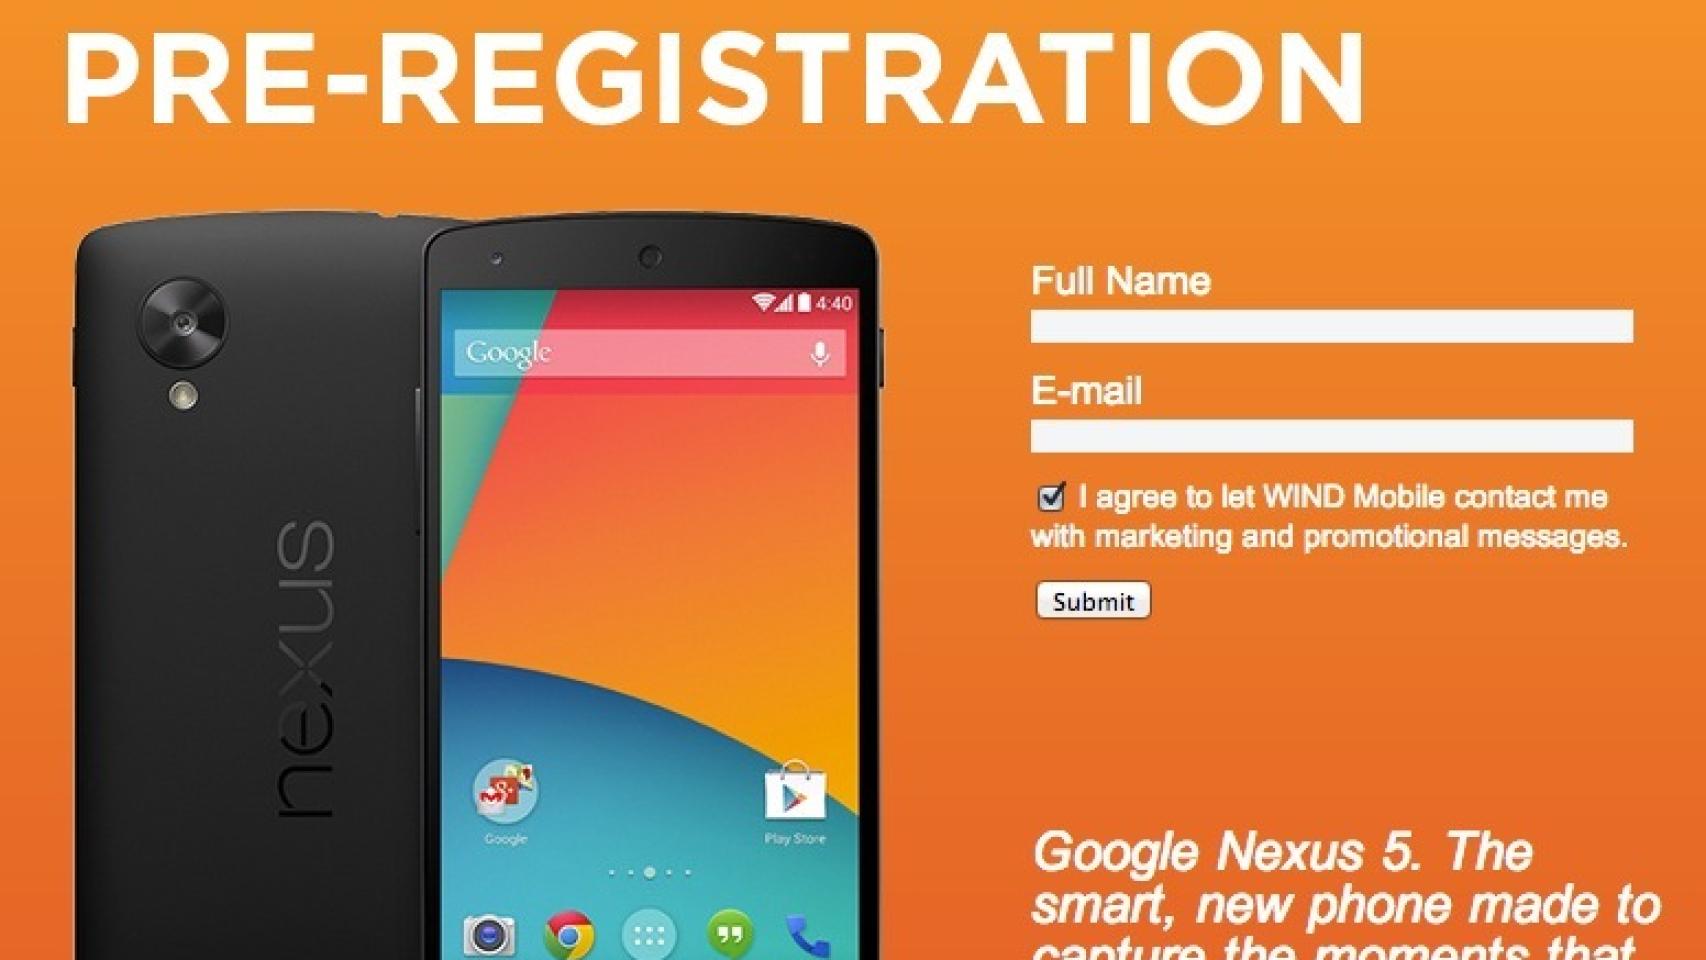 El pre-registro de Wind Mobile muestra las características finales del Nexus 5 y los almacenes de LG ya están llenos